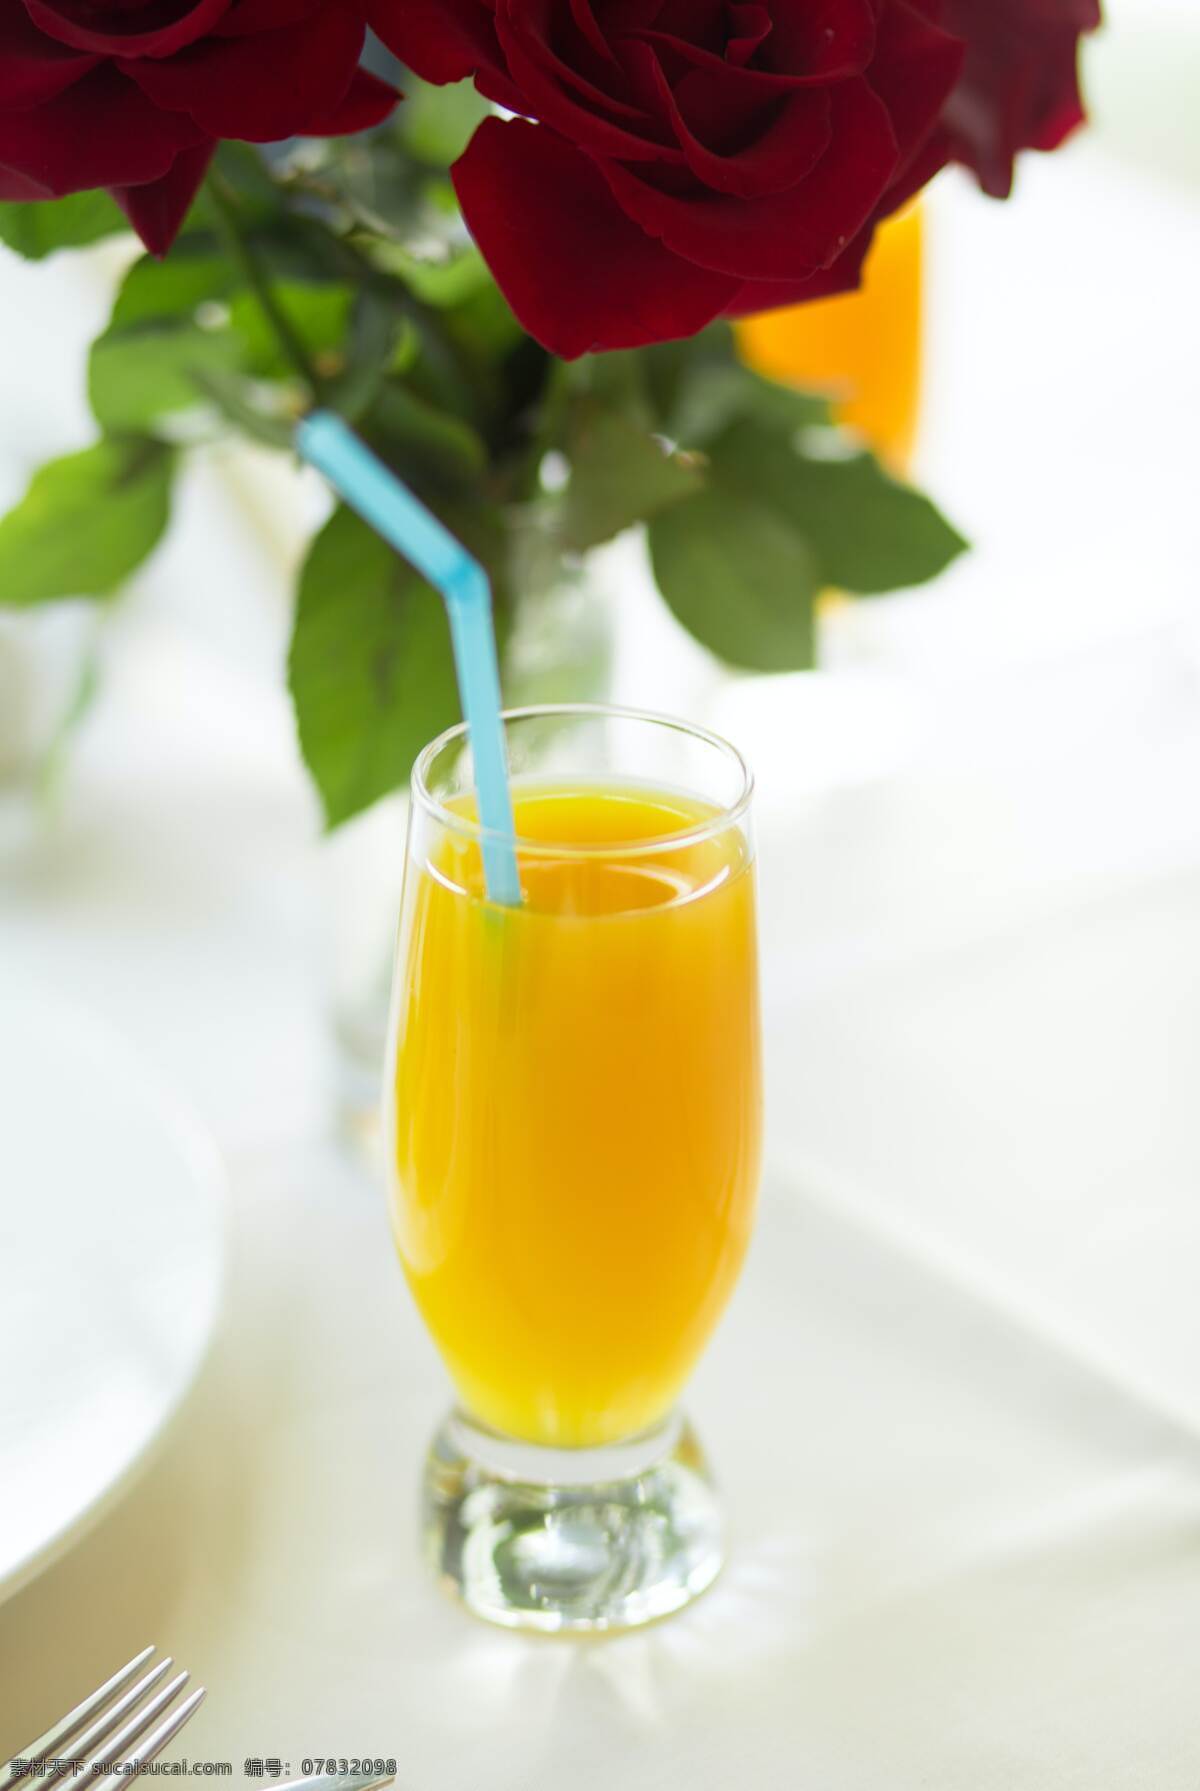 橙汁甜品 橙子 橙汁 玻璃杯 玻璃 吸管 绿叶 夏天 解渴 消暑 解暑 餐饮美食 饮料酒水